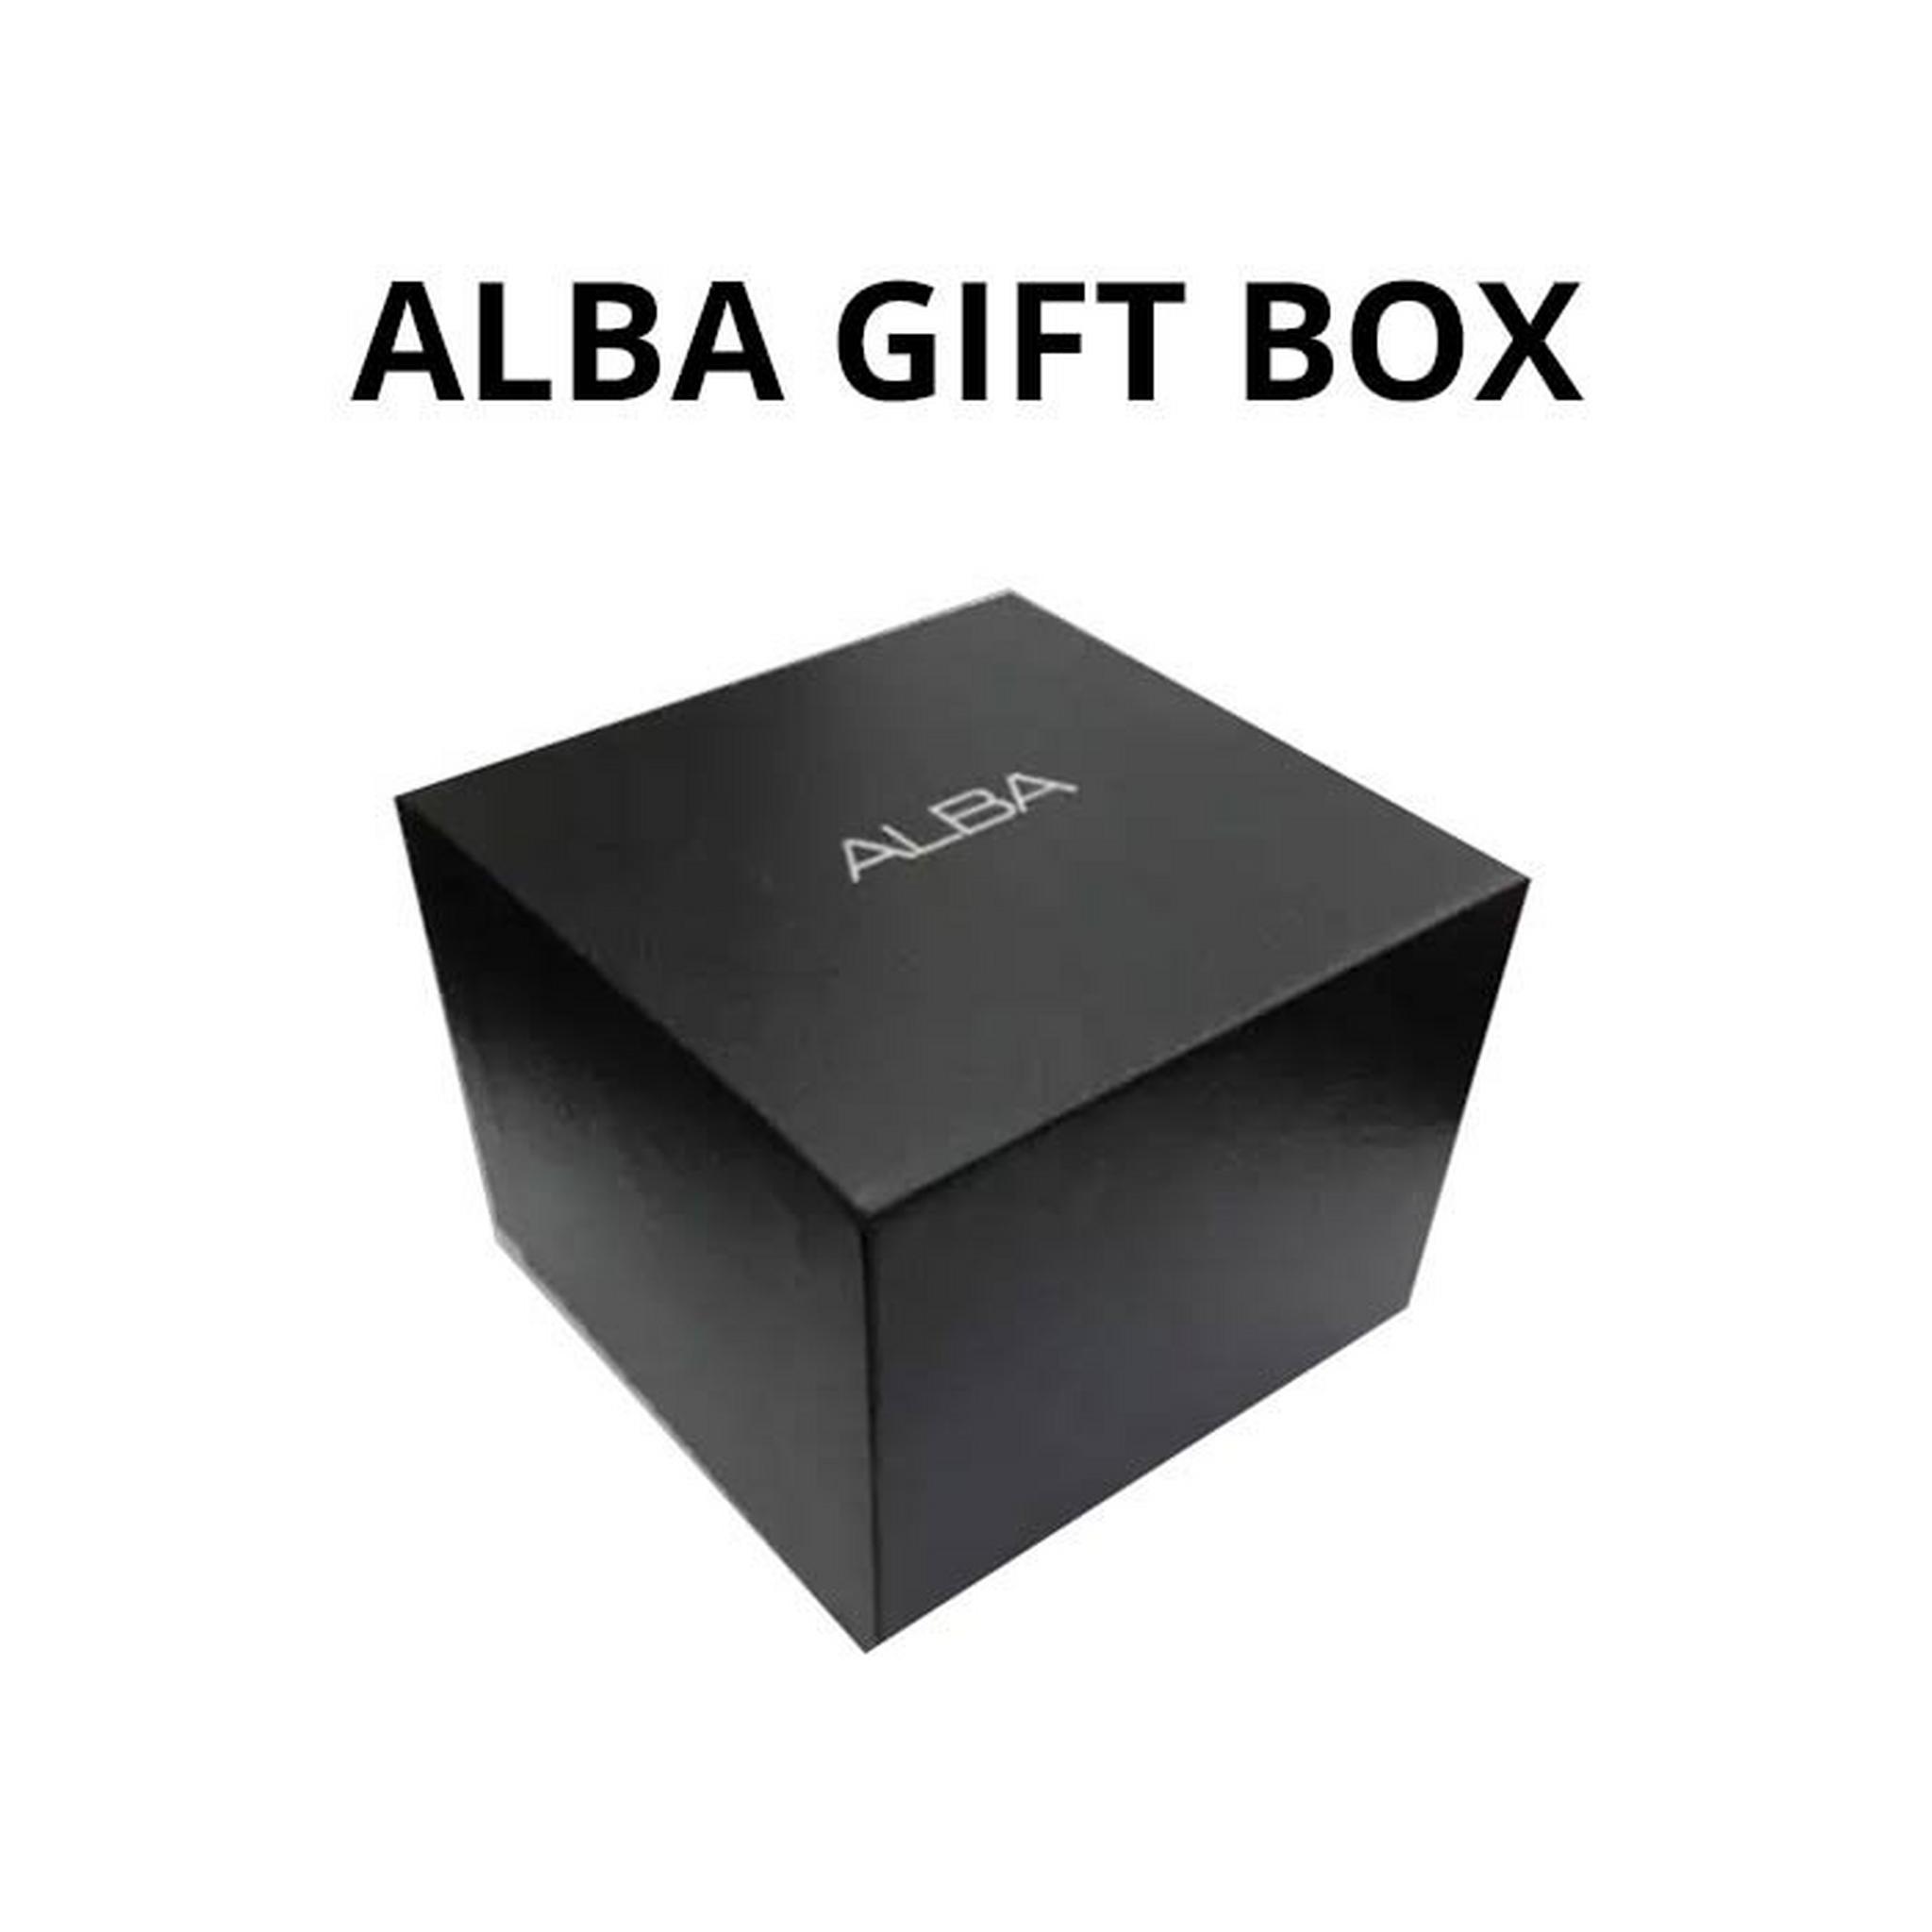 صندوق هدية لساعات ألبا